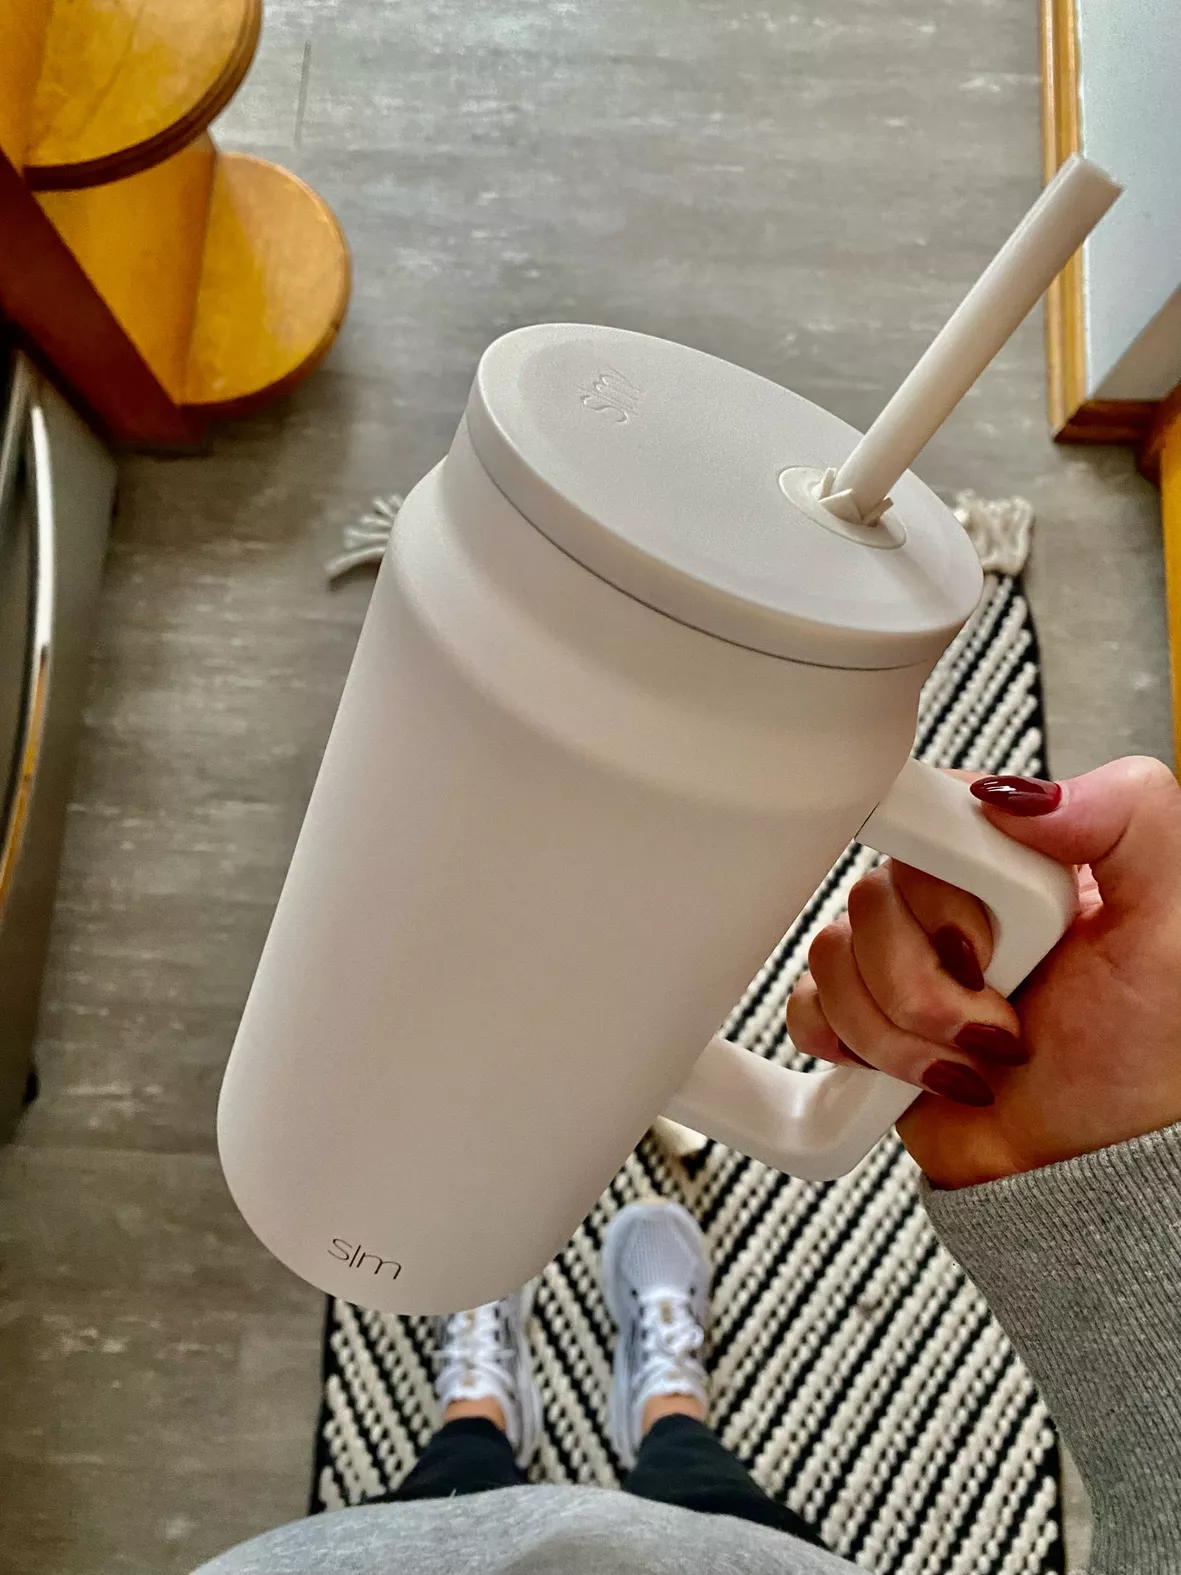 Simple Modern 50 oz Mug Tumbler with Handle and Straw 50oz